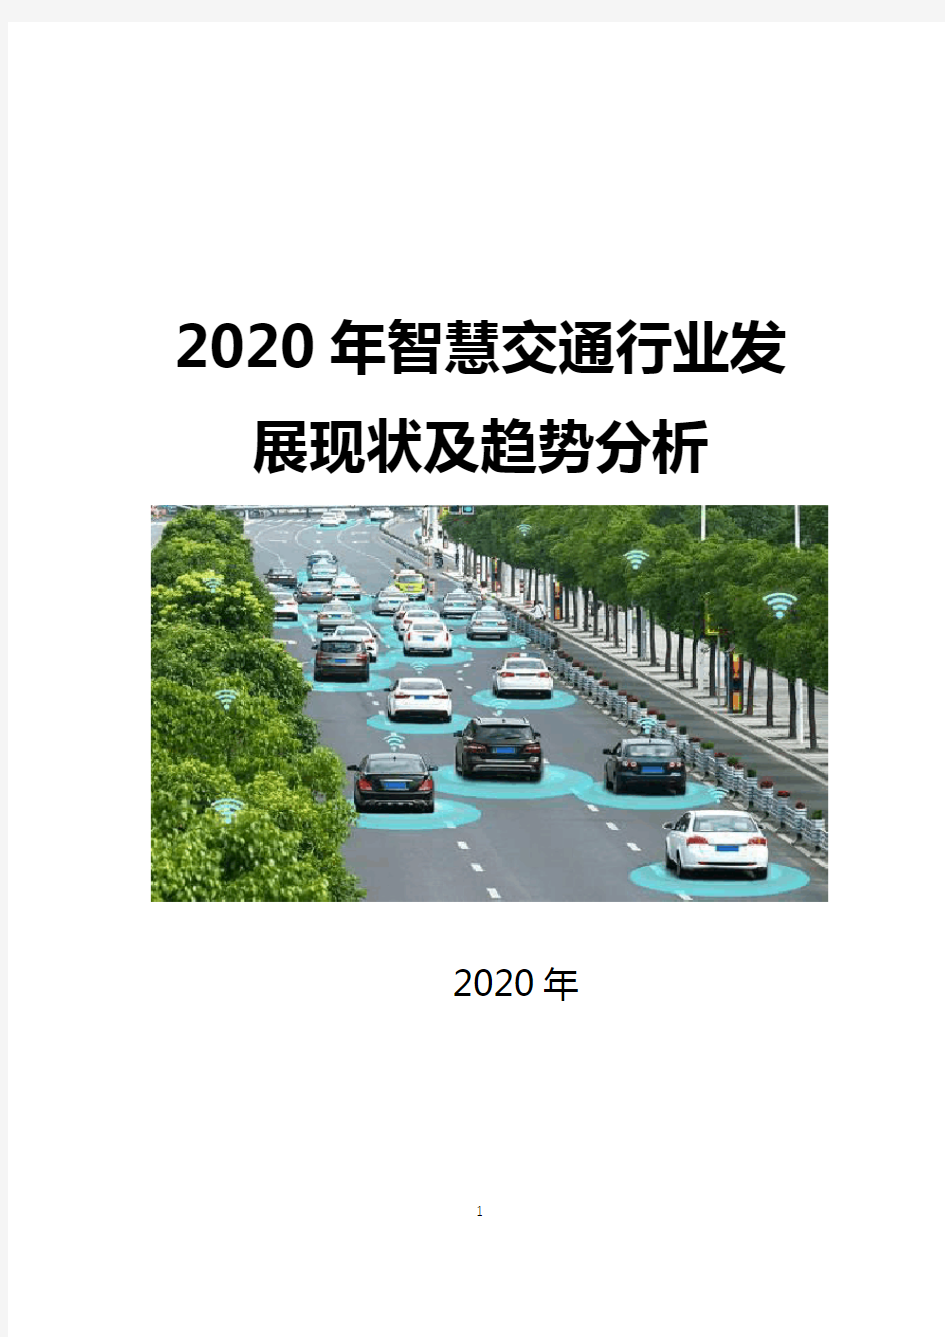 2020年智慧交通行业发展现状及趋势分析